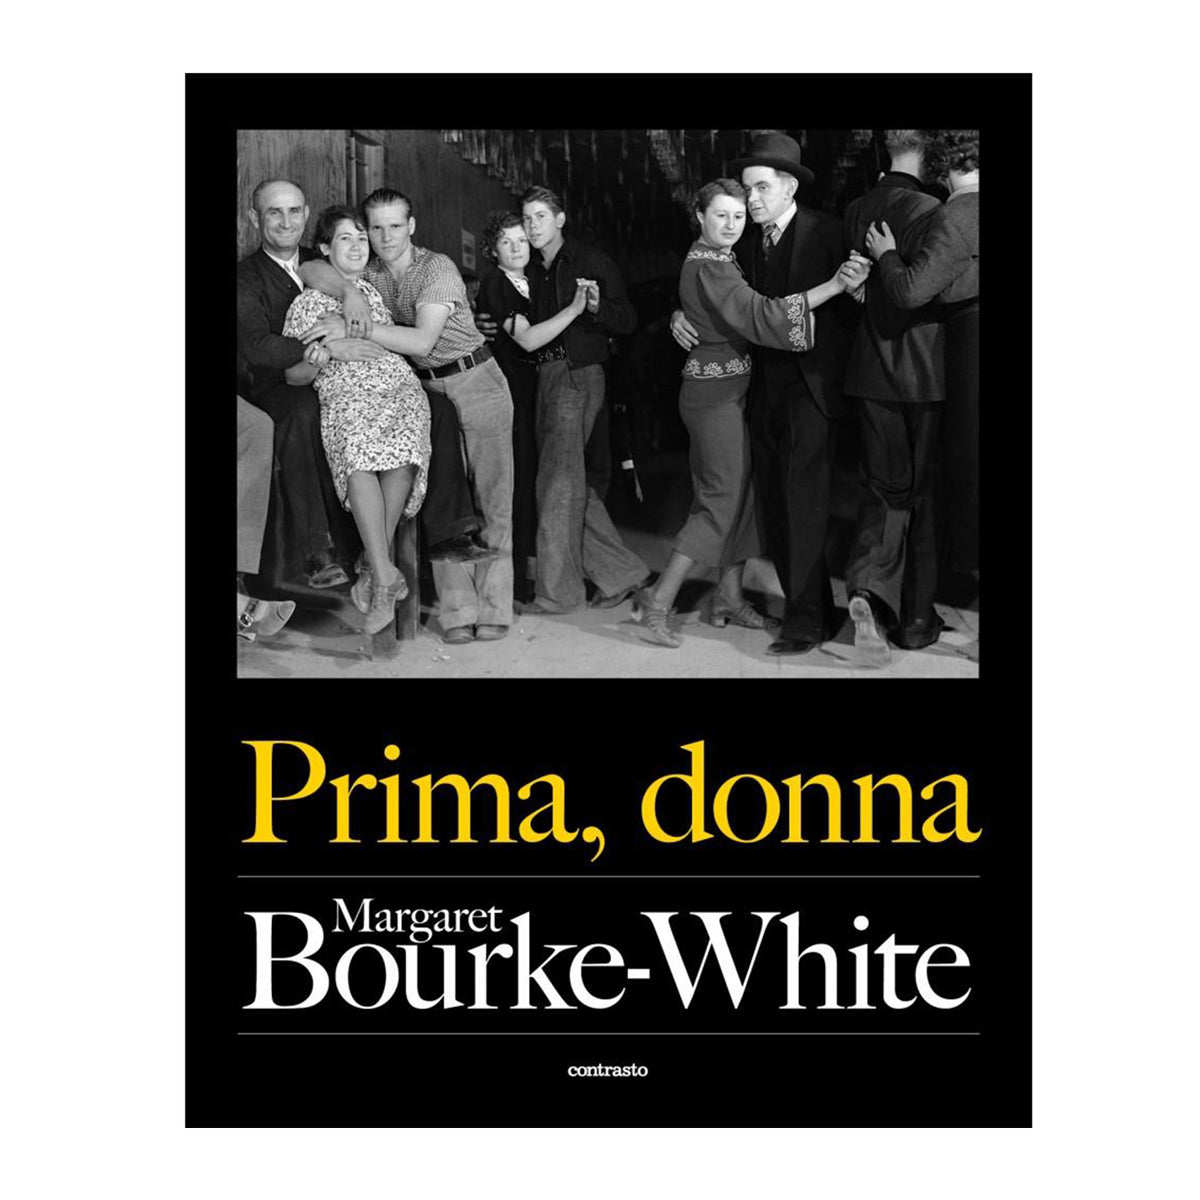 Prima, donna - Margaret Bourke-White - Cine Sud è da 47 anni sul mercato!